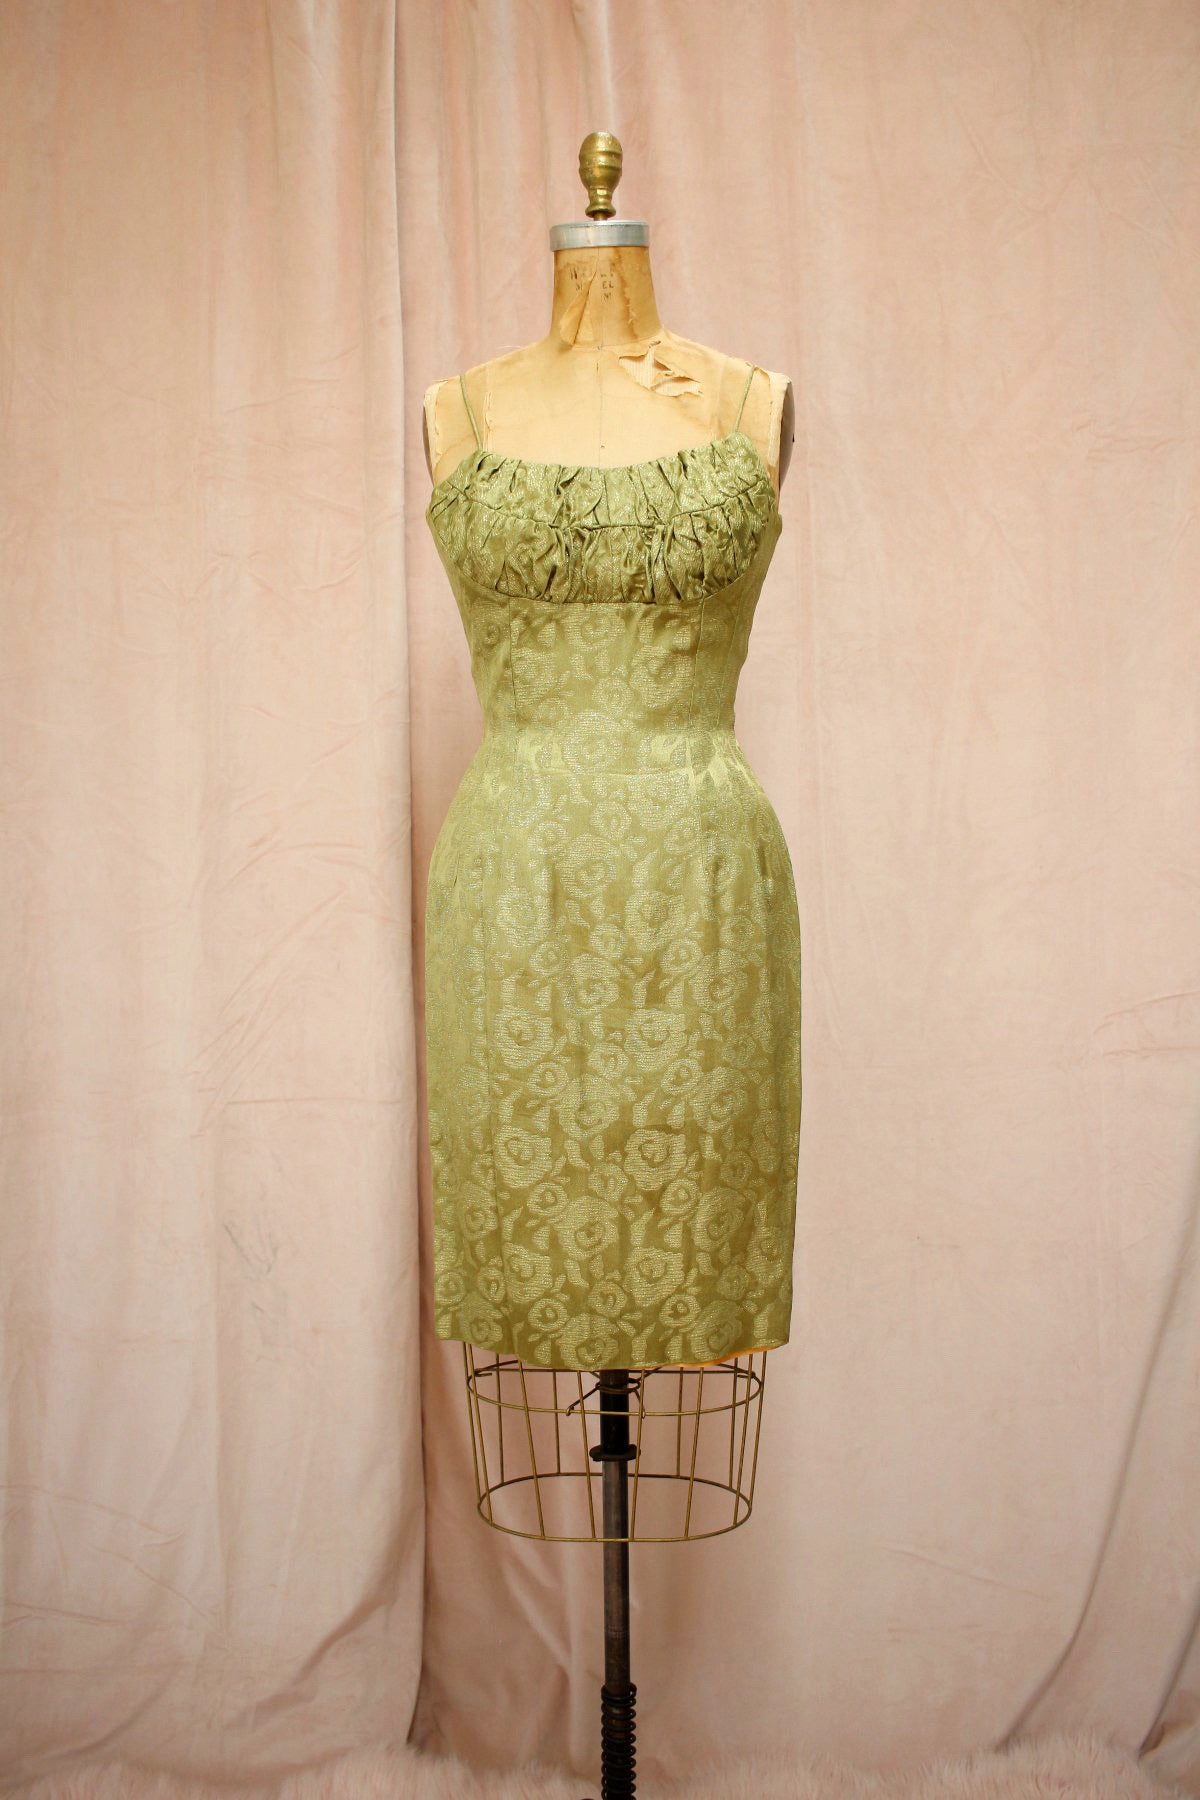 The Priscilla | Vintage 1950s-60s Lillie Rubin Moss Gold Lamé Dress Set